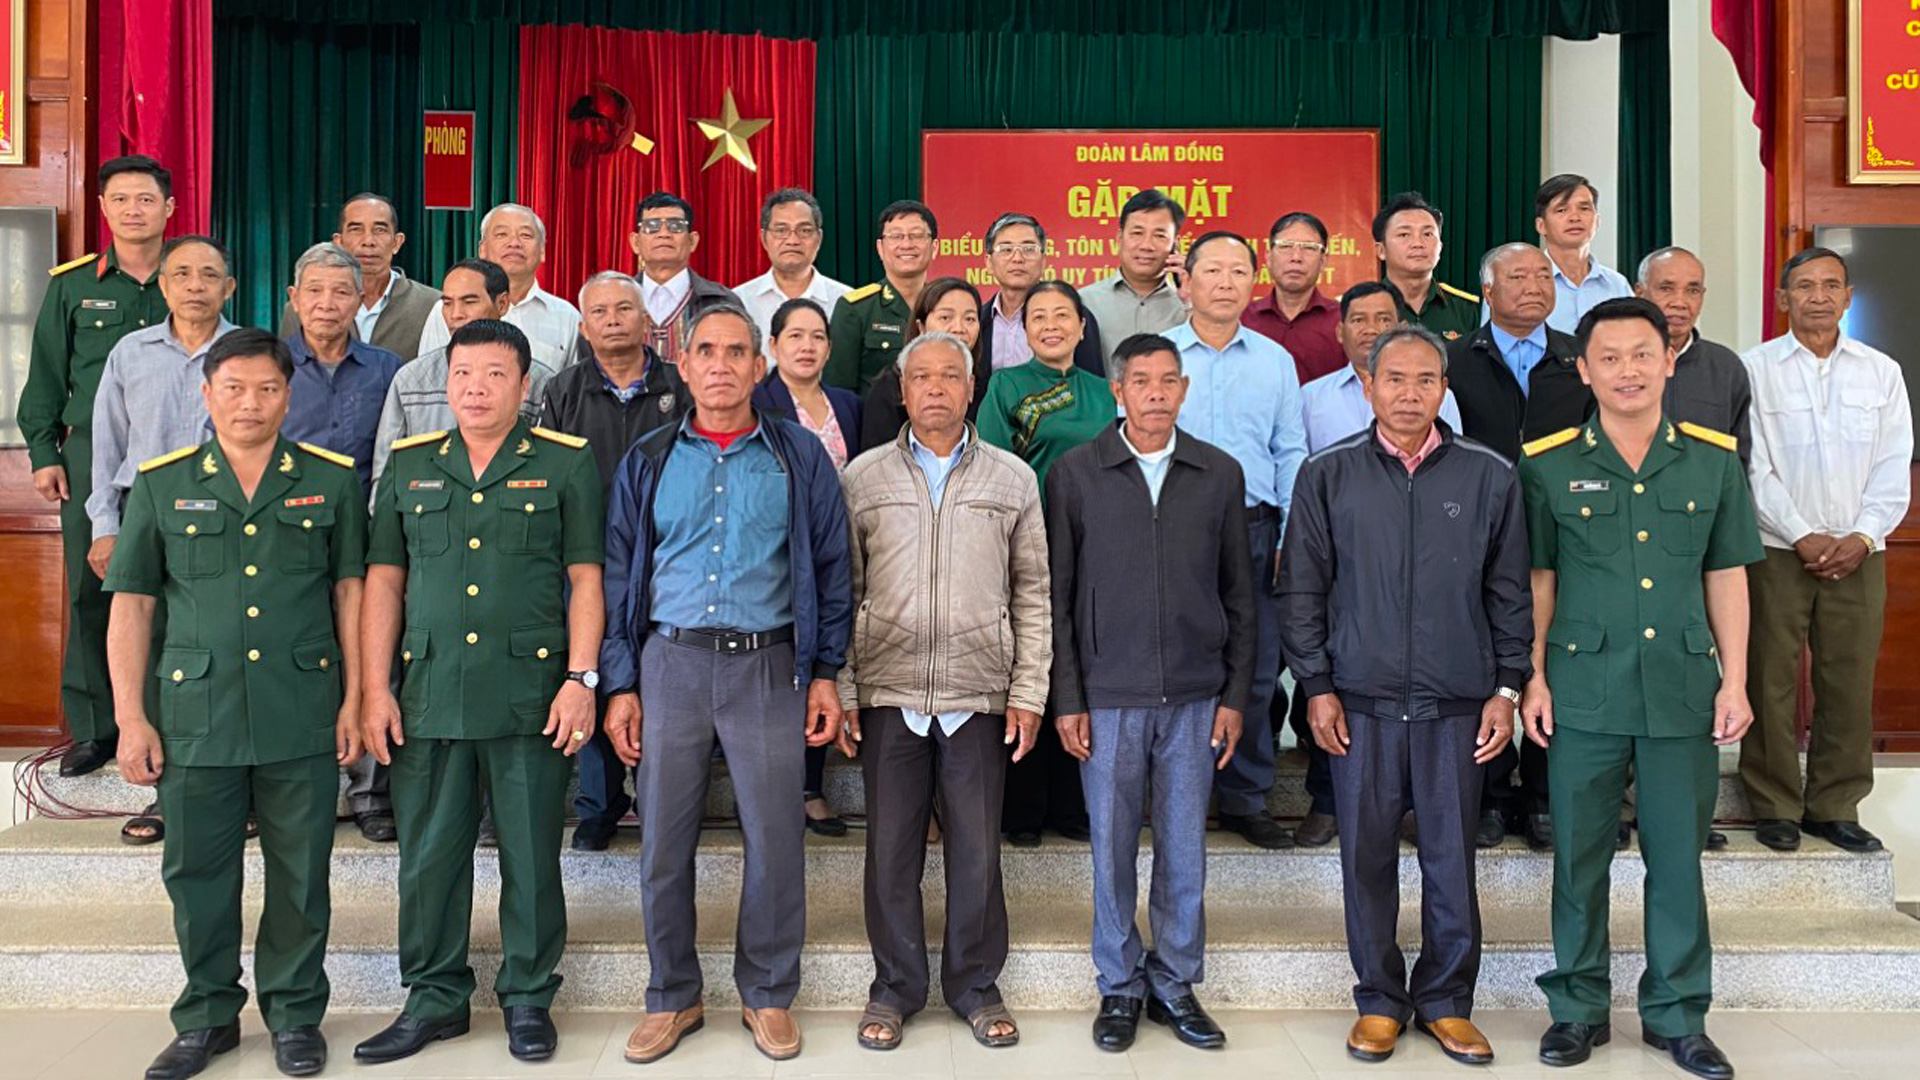 Đoàn Kinh tế quốc phòng Lâm Đồng gặp mặt các già làng, chức sắc tôn giáo, người có uy tín